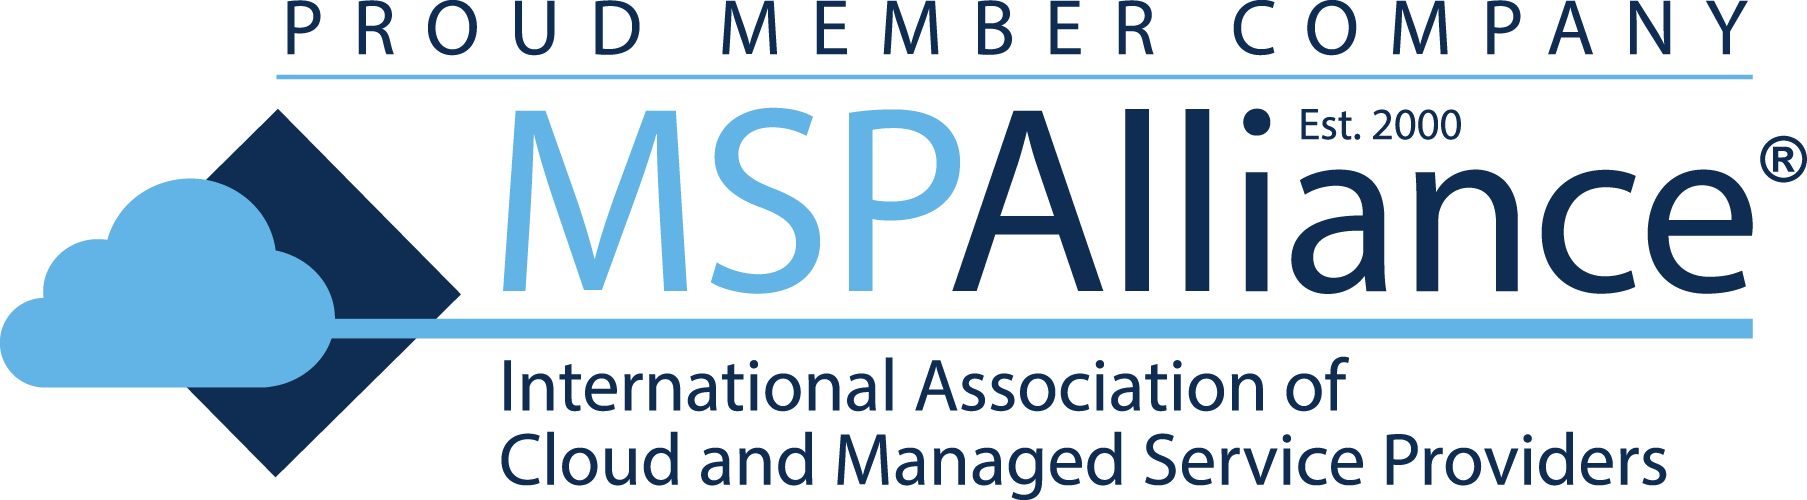 MSPA Logopng